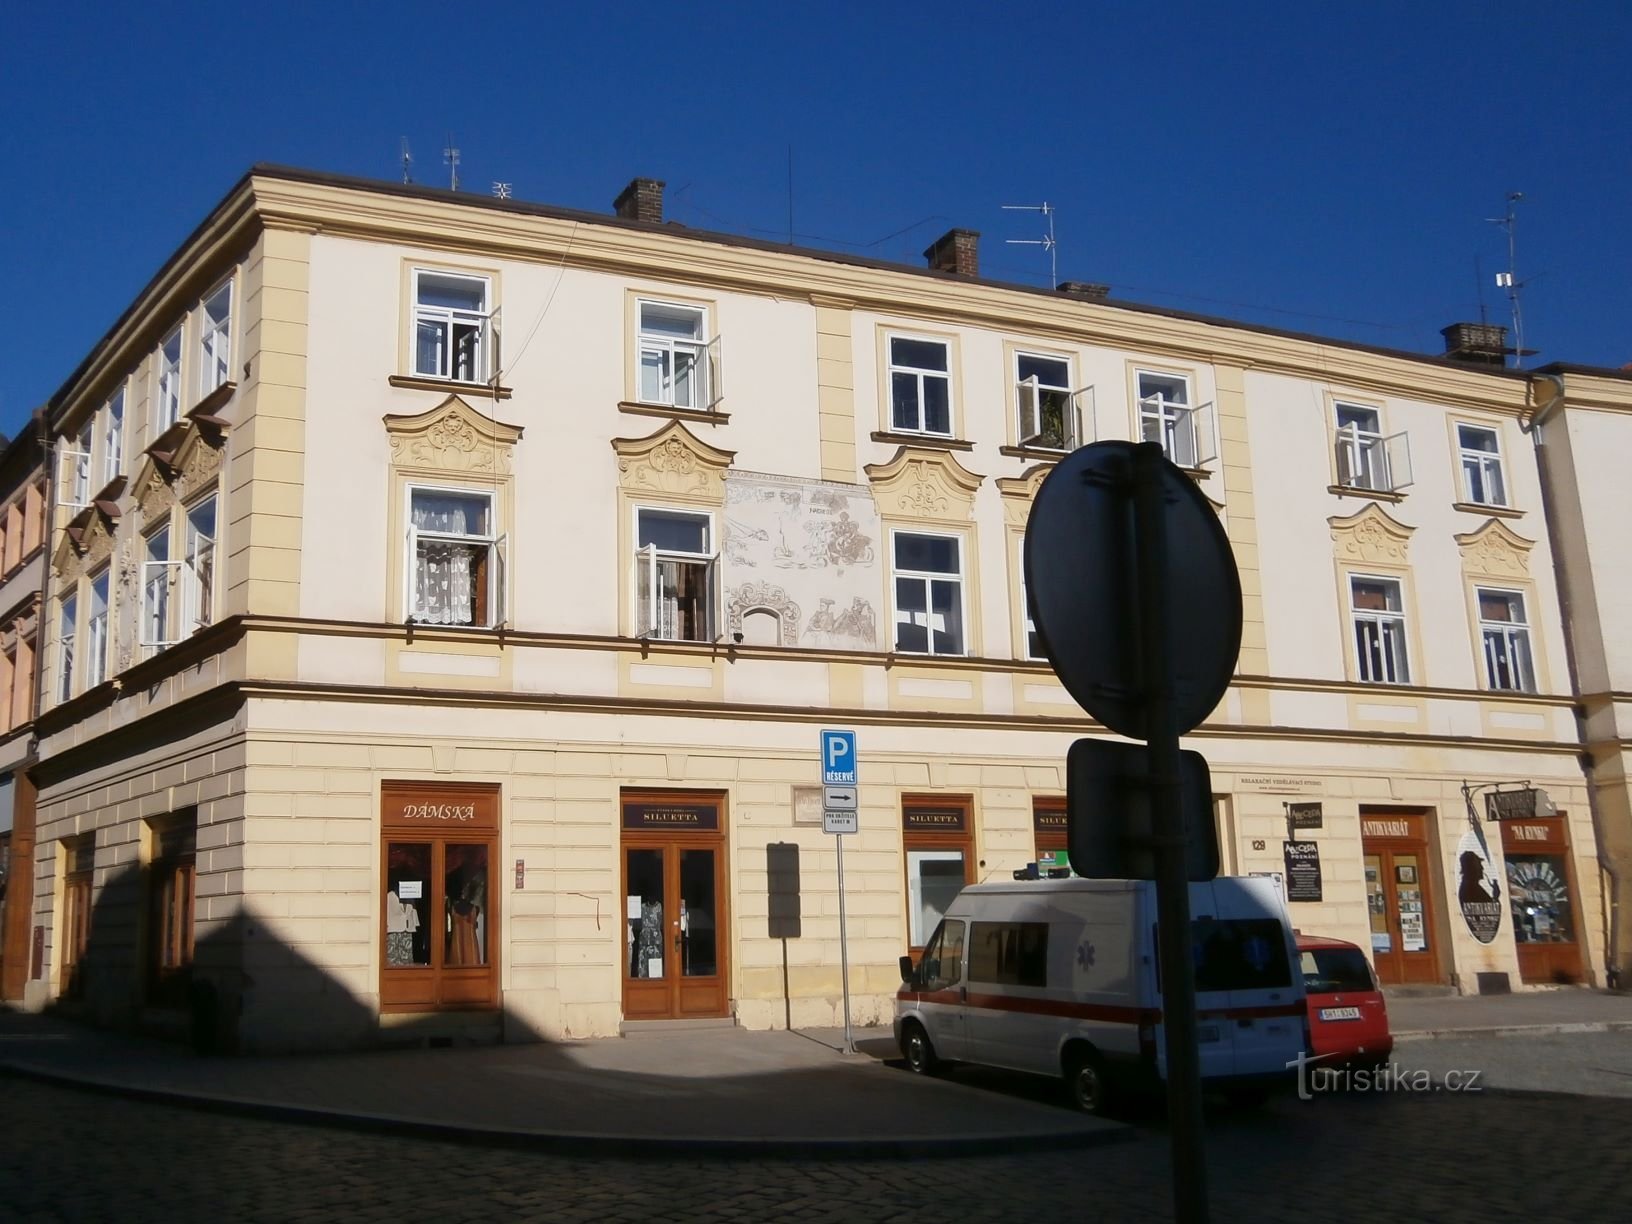 Malé náměstí nr. 129 (Hradec Králové, 2.8.2013. april XNUMX)